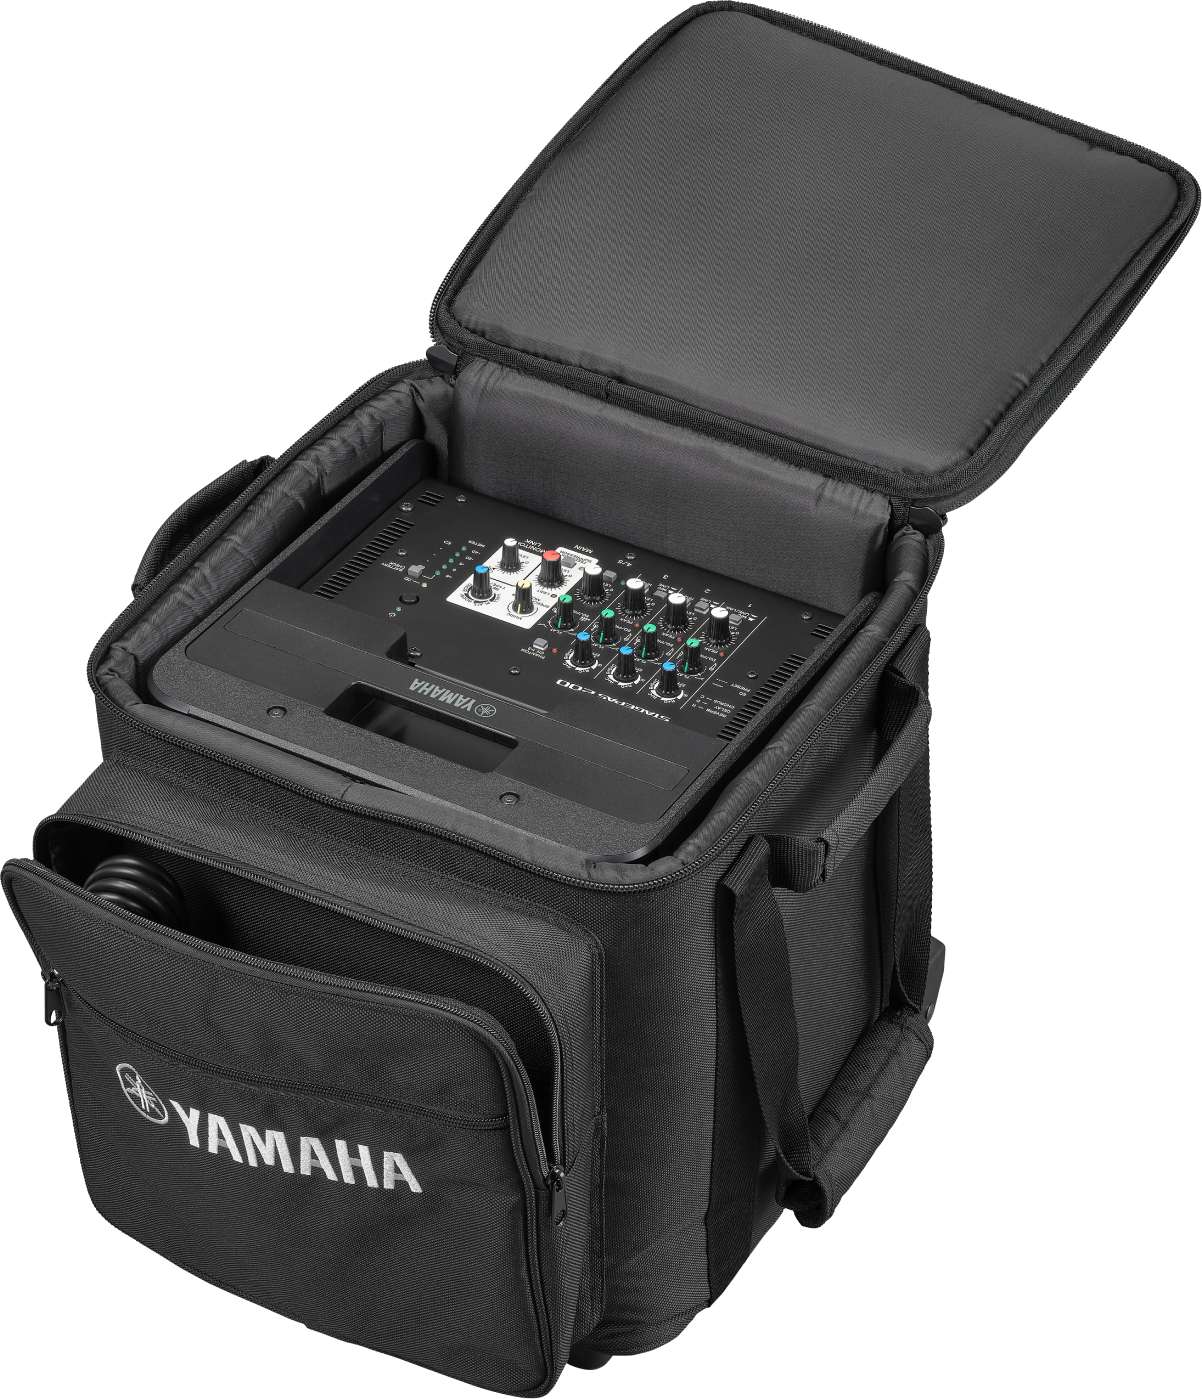 Yamaha Valise Pour Stagepas 200 - Flight Case Rangement - Main picture